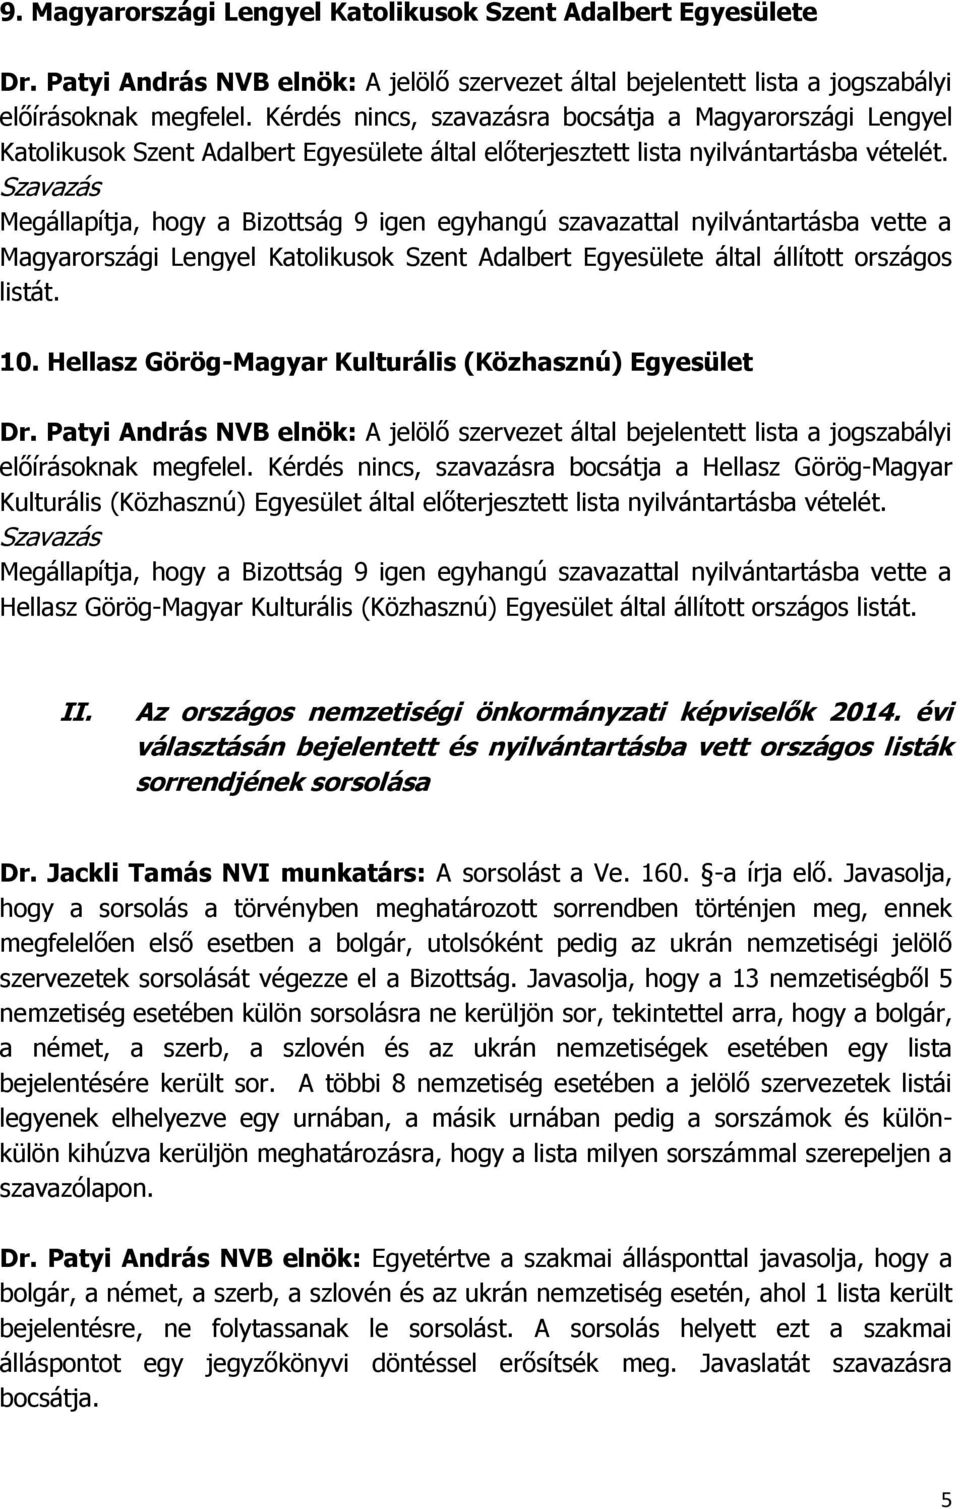 Magyarországi Lengyel Katolikusok Szent Adalbert Egyesülete által állított országos listát. 10. Hellasz Görög-Magyar Kulturális (Közhasznú) Egyesület előírásoknak megfelel.